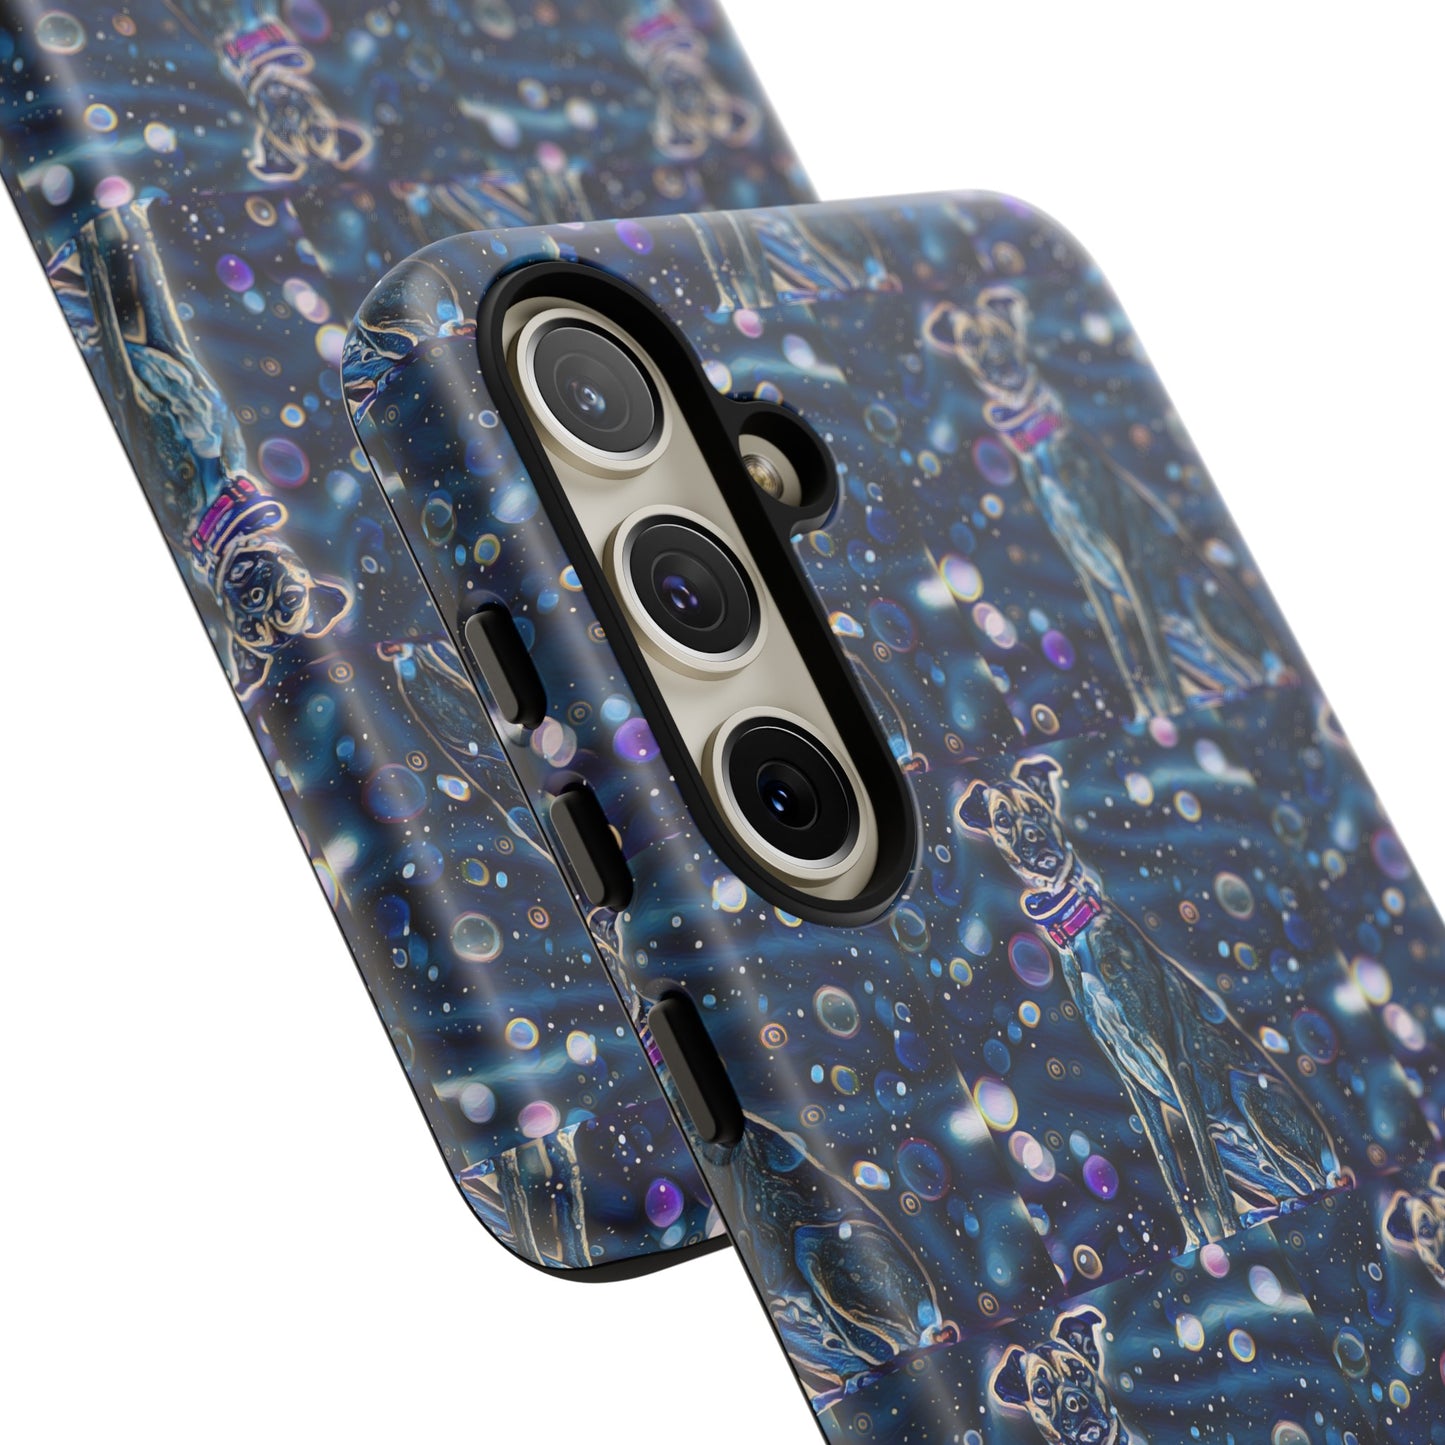 Blue Dog phone case